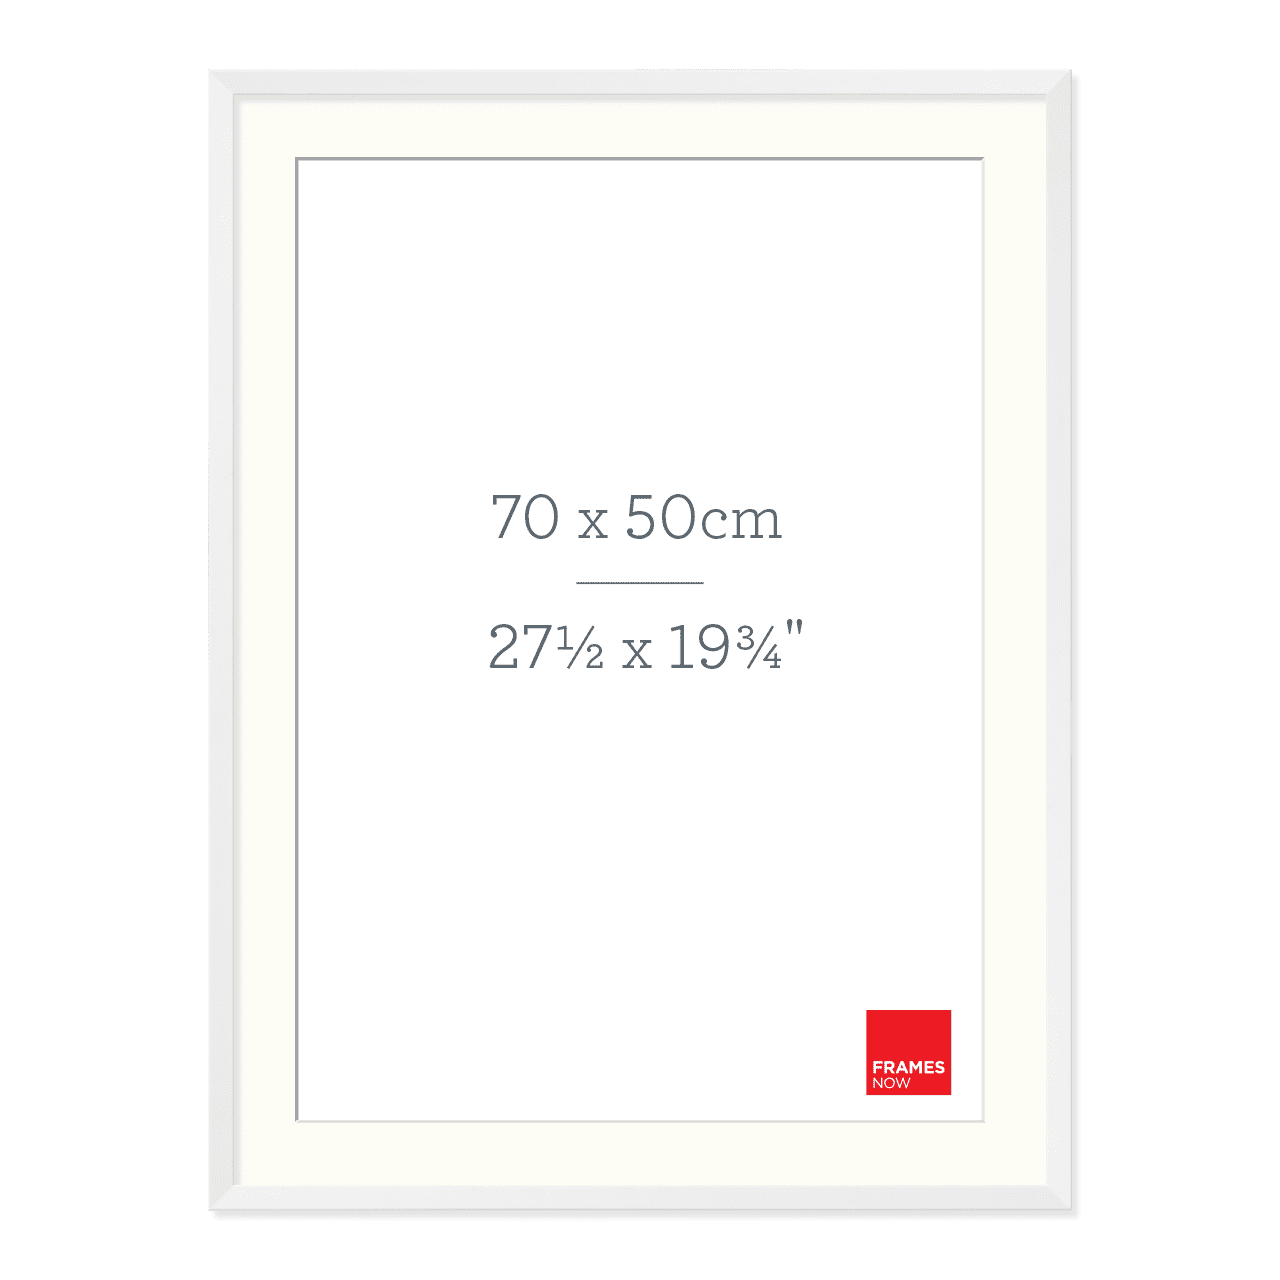 Premium Matte White Box Picture Frame with Matboard for 70 x 50cm Artwork